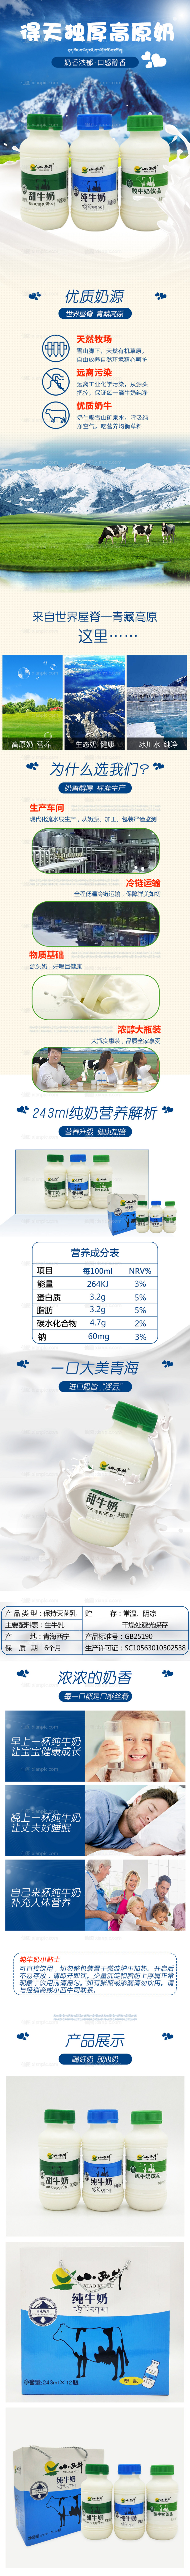 素材乐-纯牛奶营养成分淘宝详情页